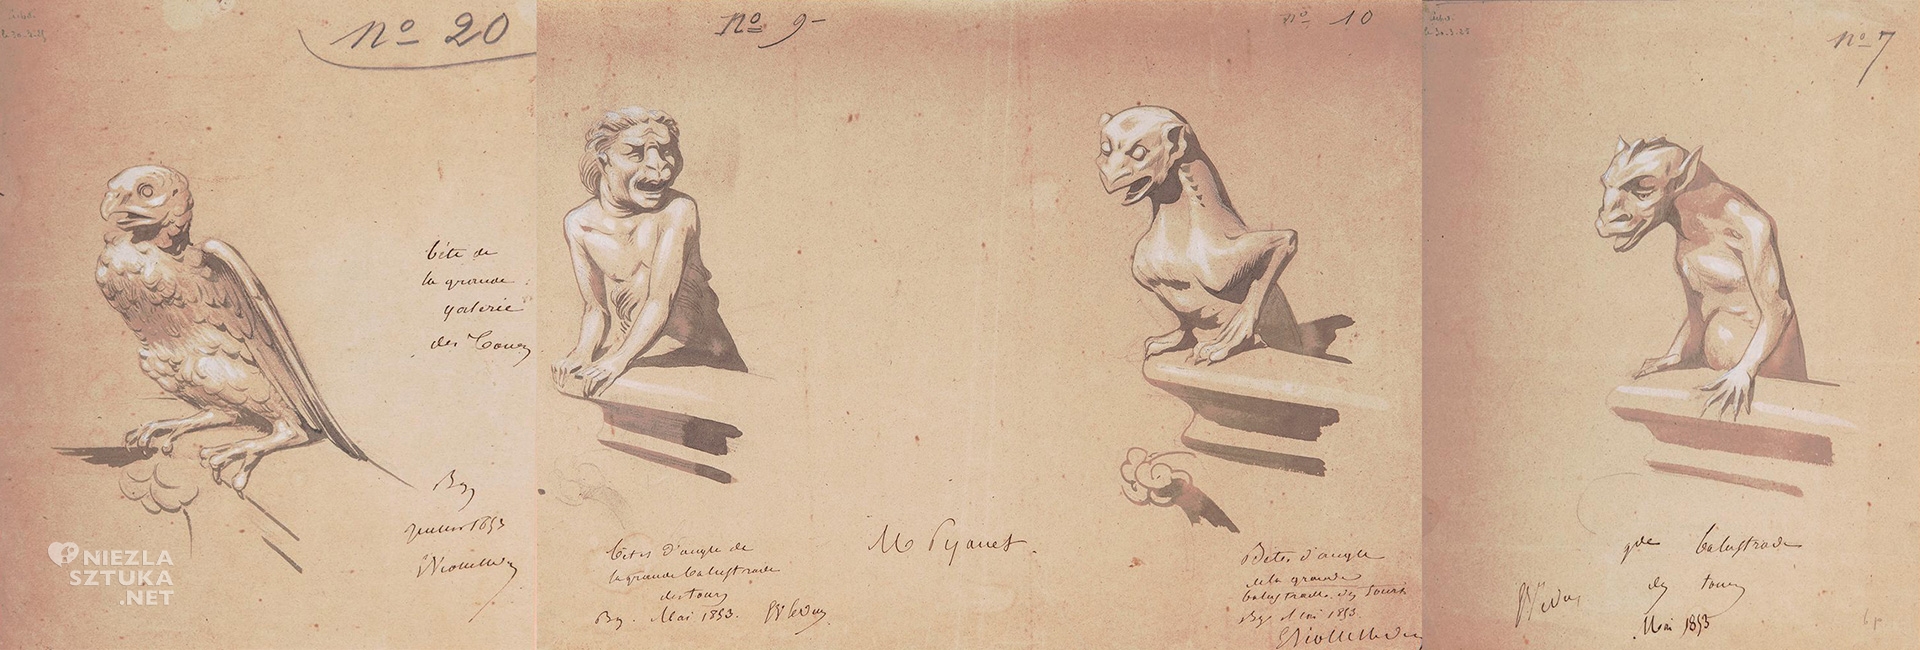 Eugène-Emmanuel Viollet-Le-Duc, Szkice, gargulce, katedra Notre-Dame, Paryż, niezła sztuka